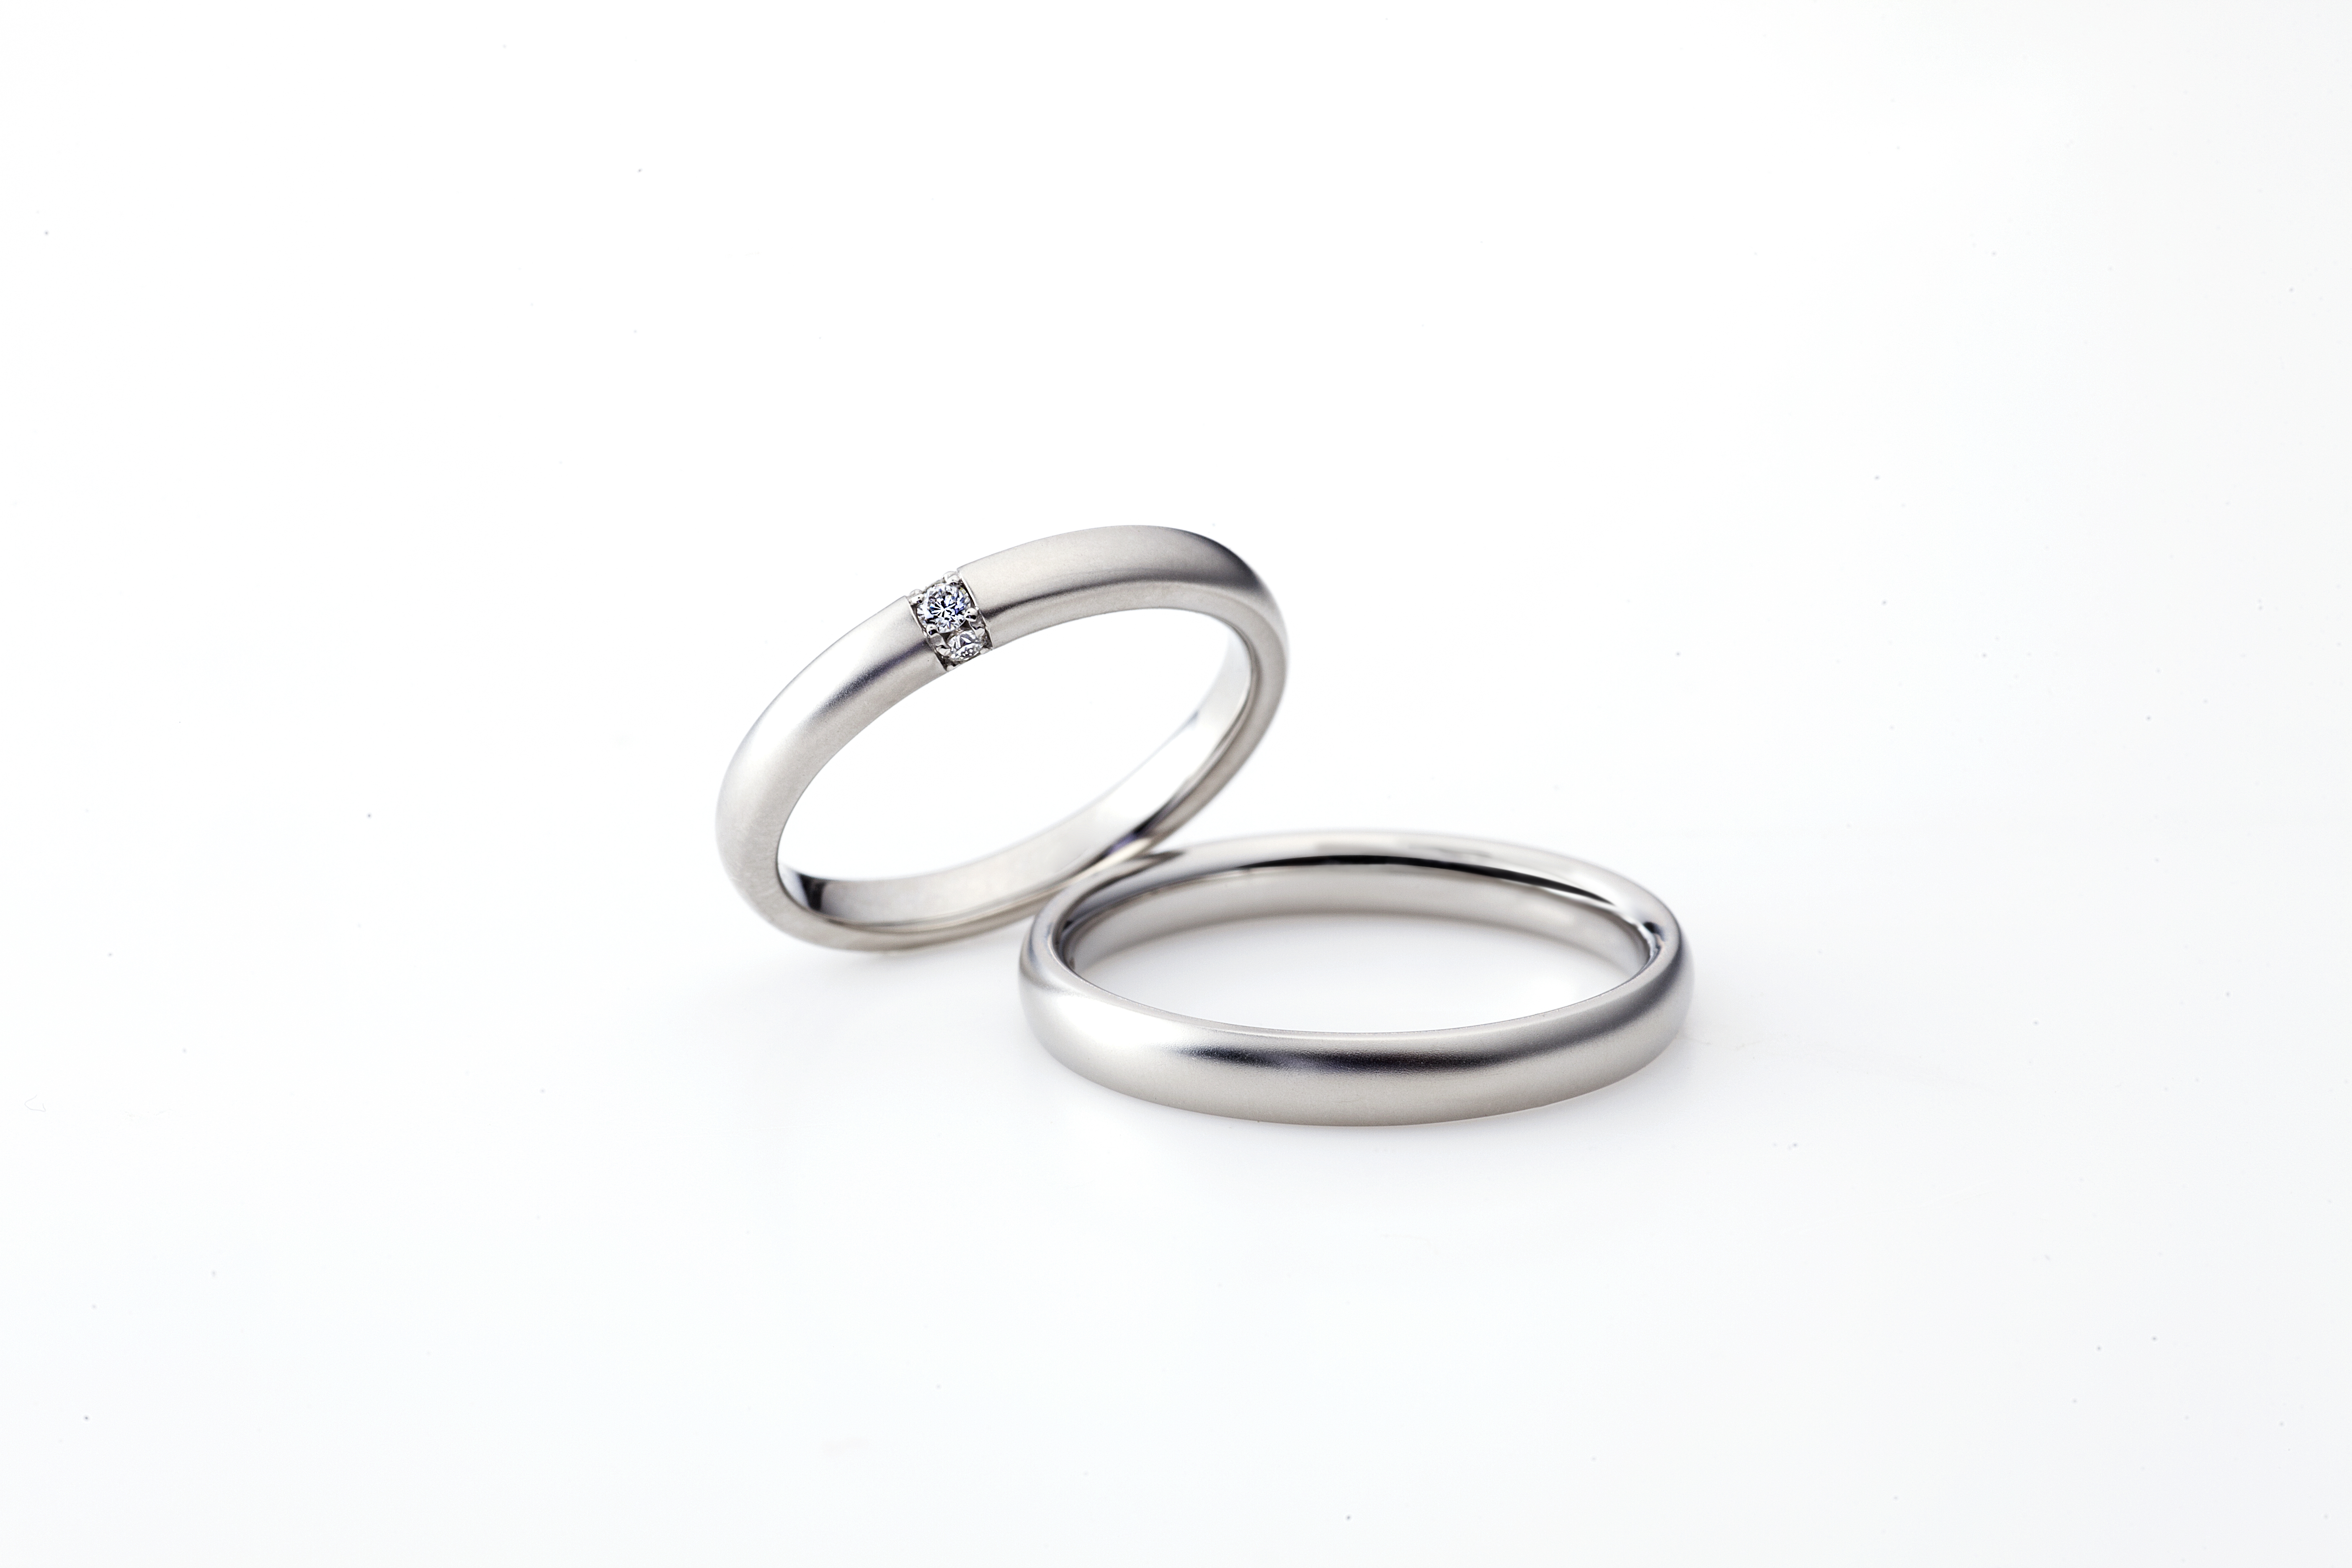 丈夫な結婚指輪｜今話題の新素材「フェアリープラチナム」なら安心して長く一生愛用できる。オススメのブランド・デザインを紹介します！